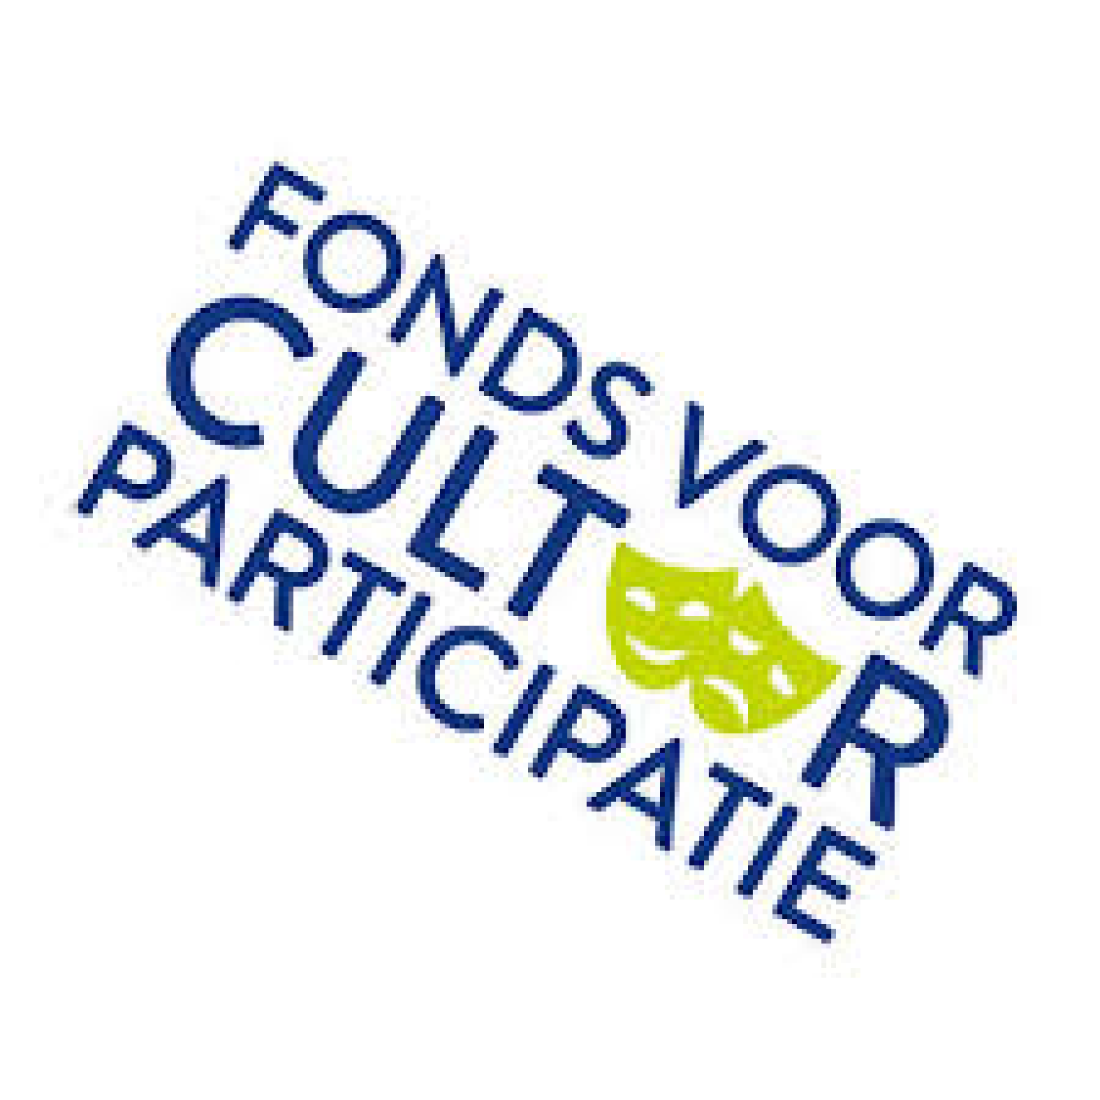 Fonds voor Cultuur Participatie